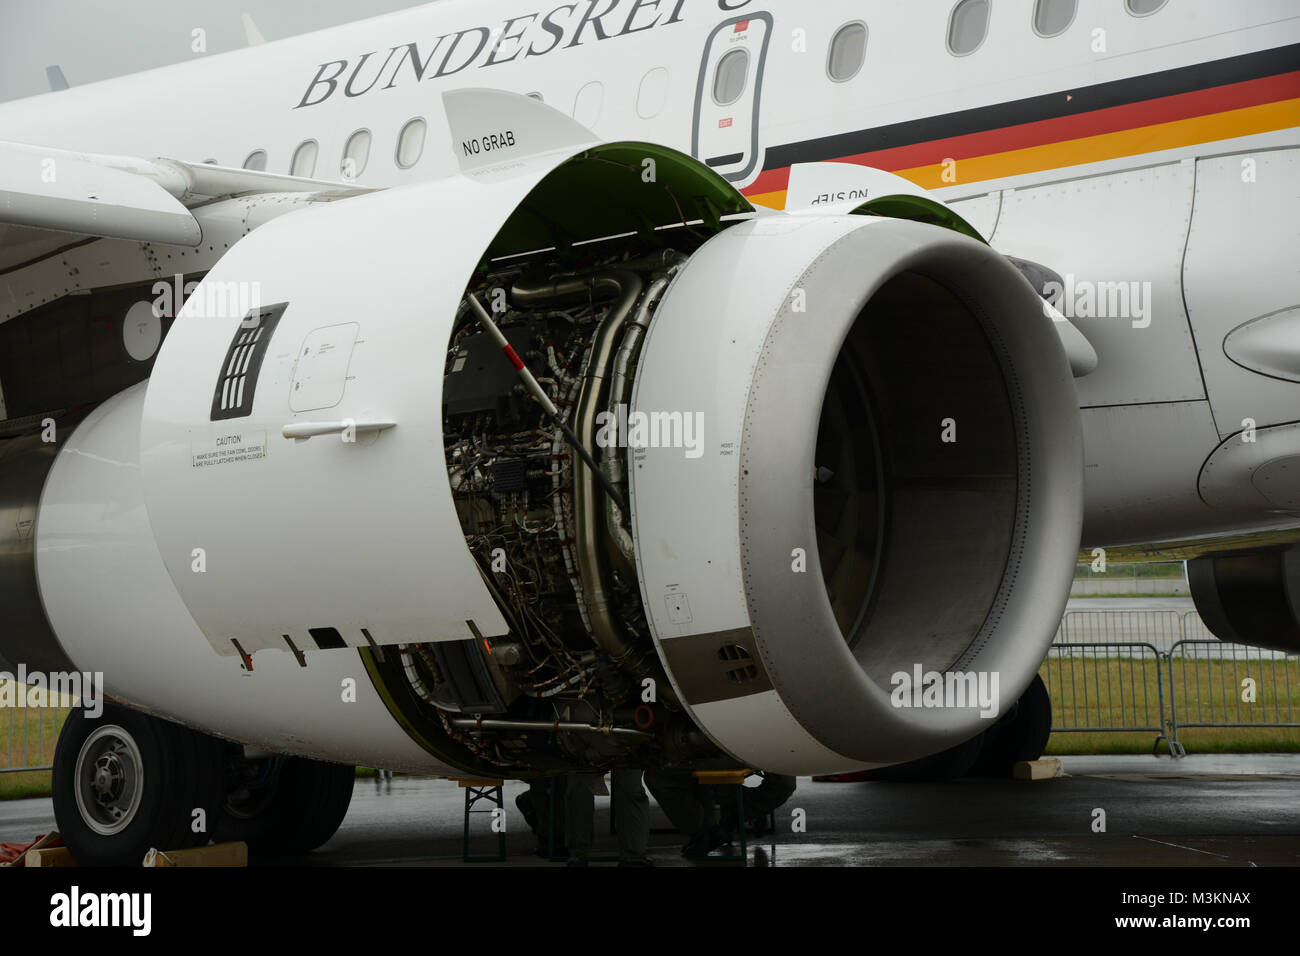 Un Regierungsmaschine Triebwerke die der319CJ der Luftwaffe von Airbus. Verfuegt ueber das Flugzeug Typ 2 Triebwerke des CFM56-5B7. Ausgestellt wurde die Maschine auf der ILA International Airshow 2016 à Berlin. Banque D'Images